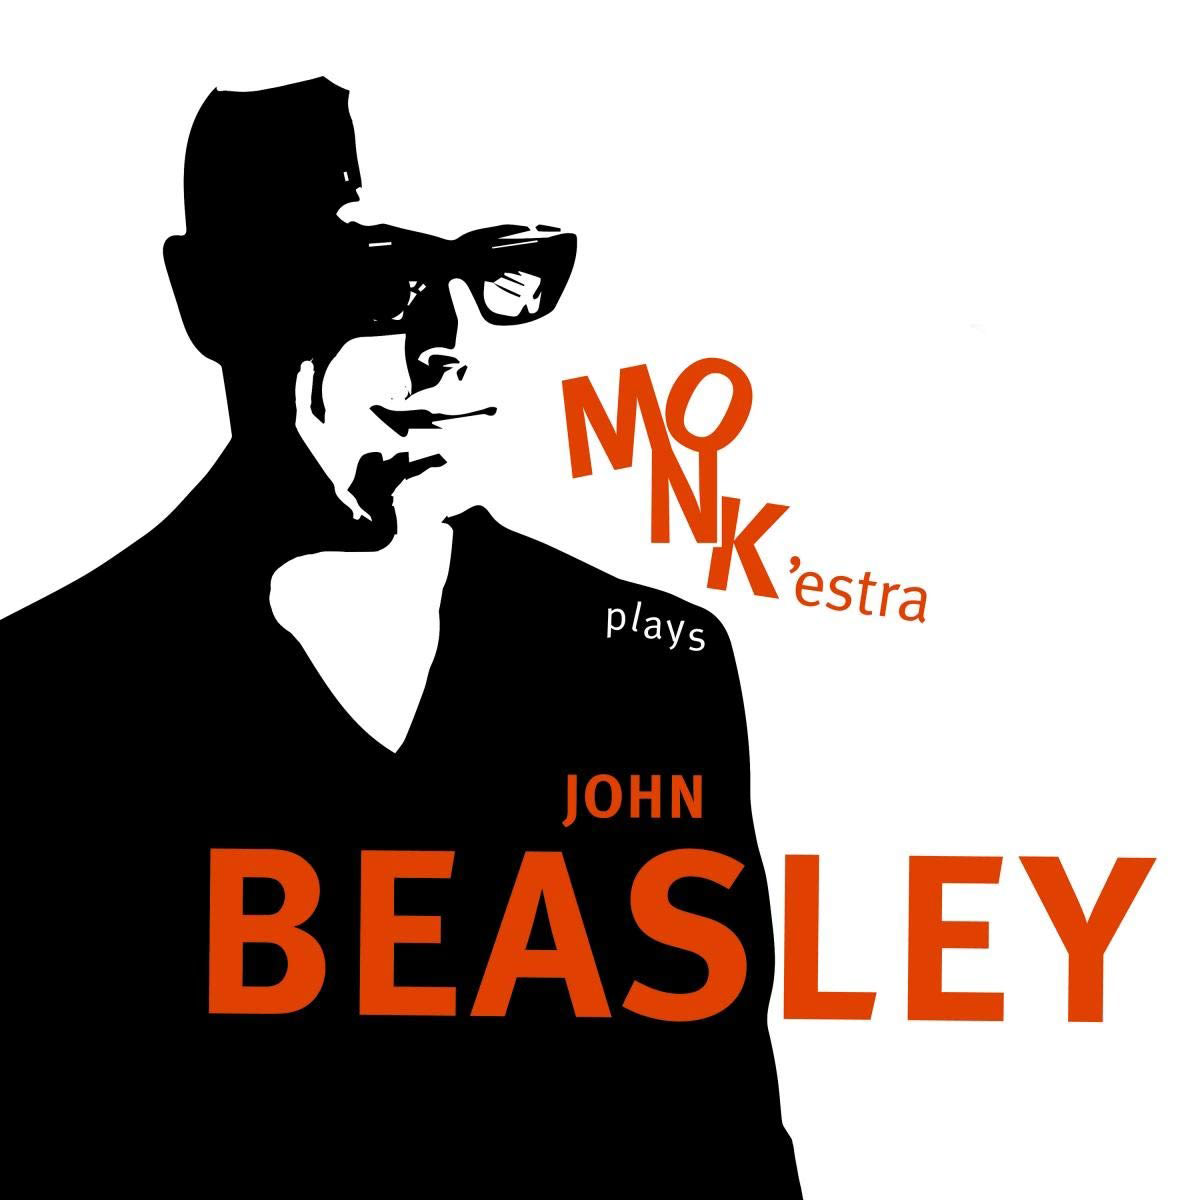 MONK’estra Plays John Beasley